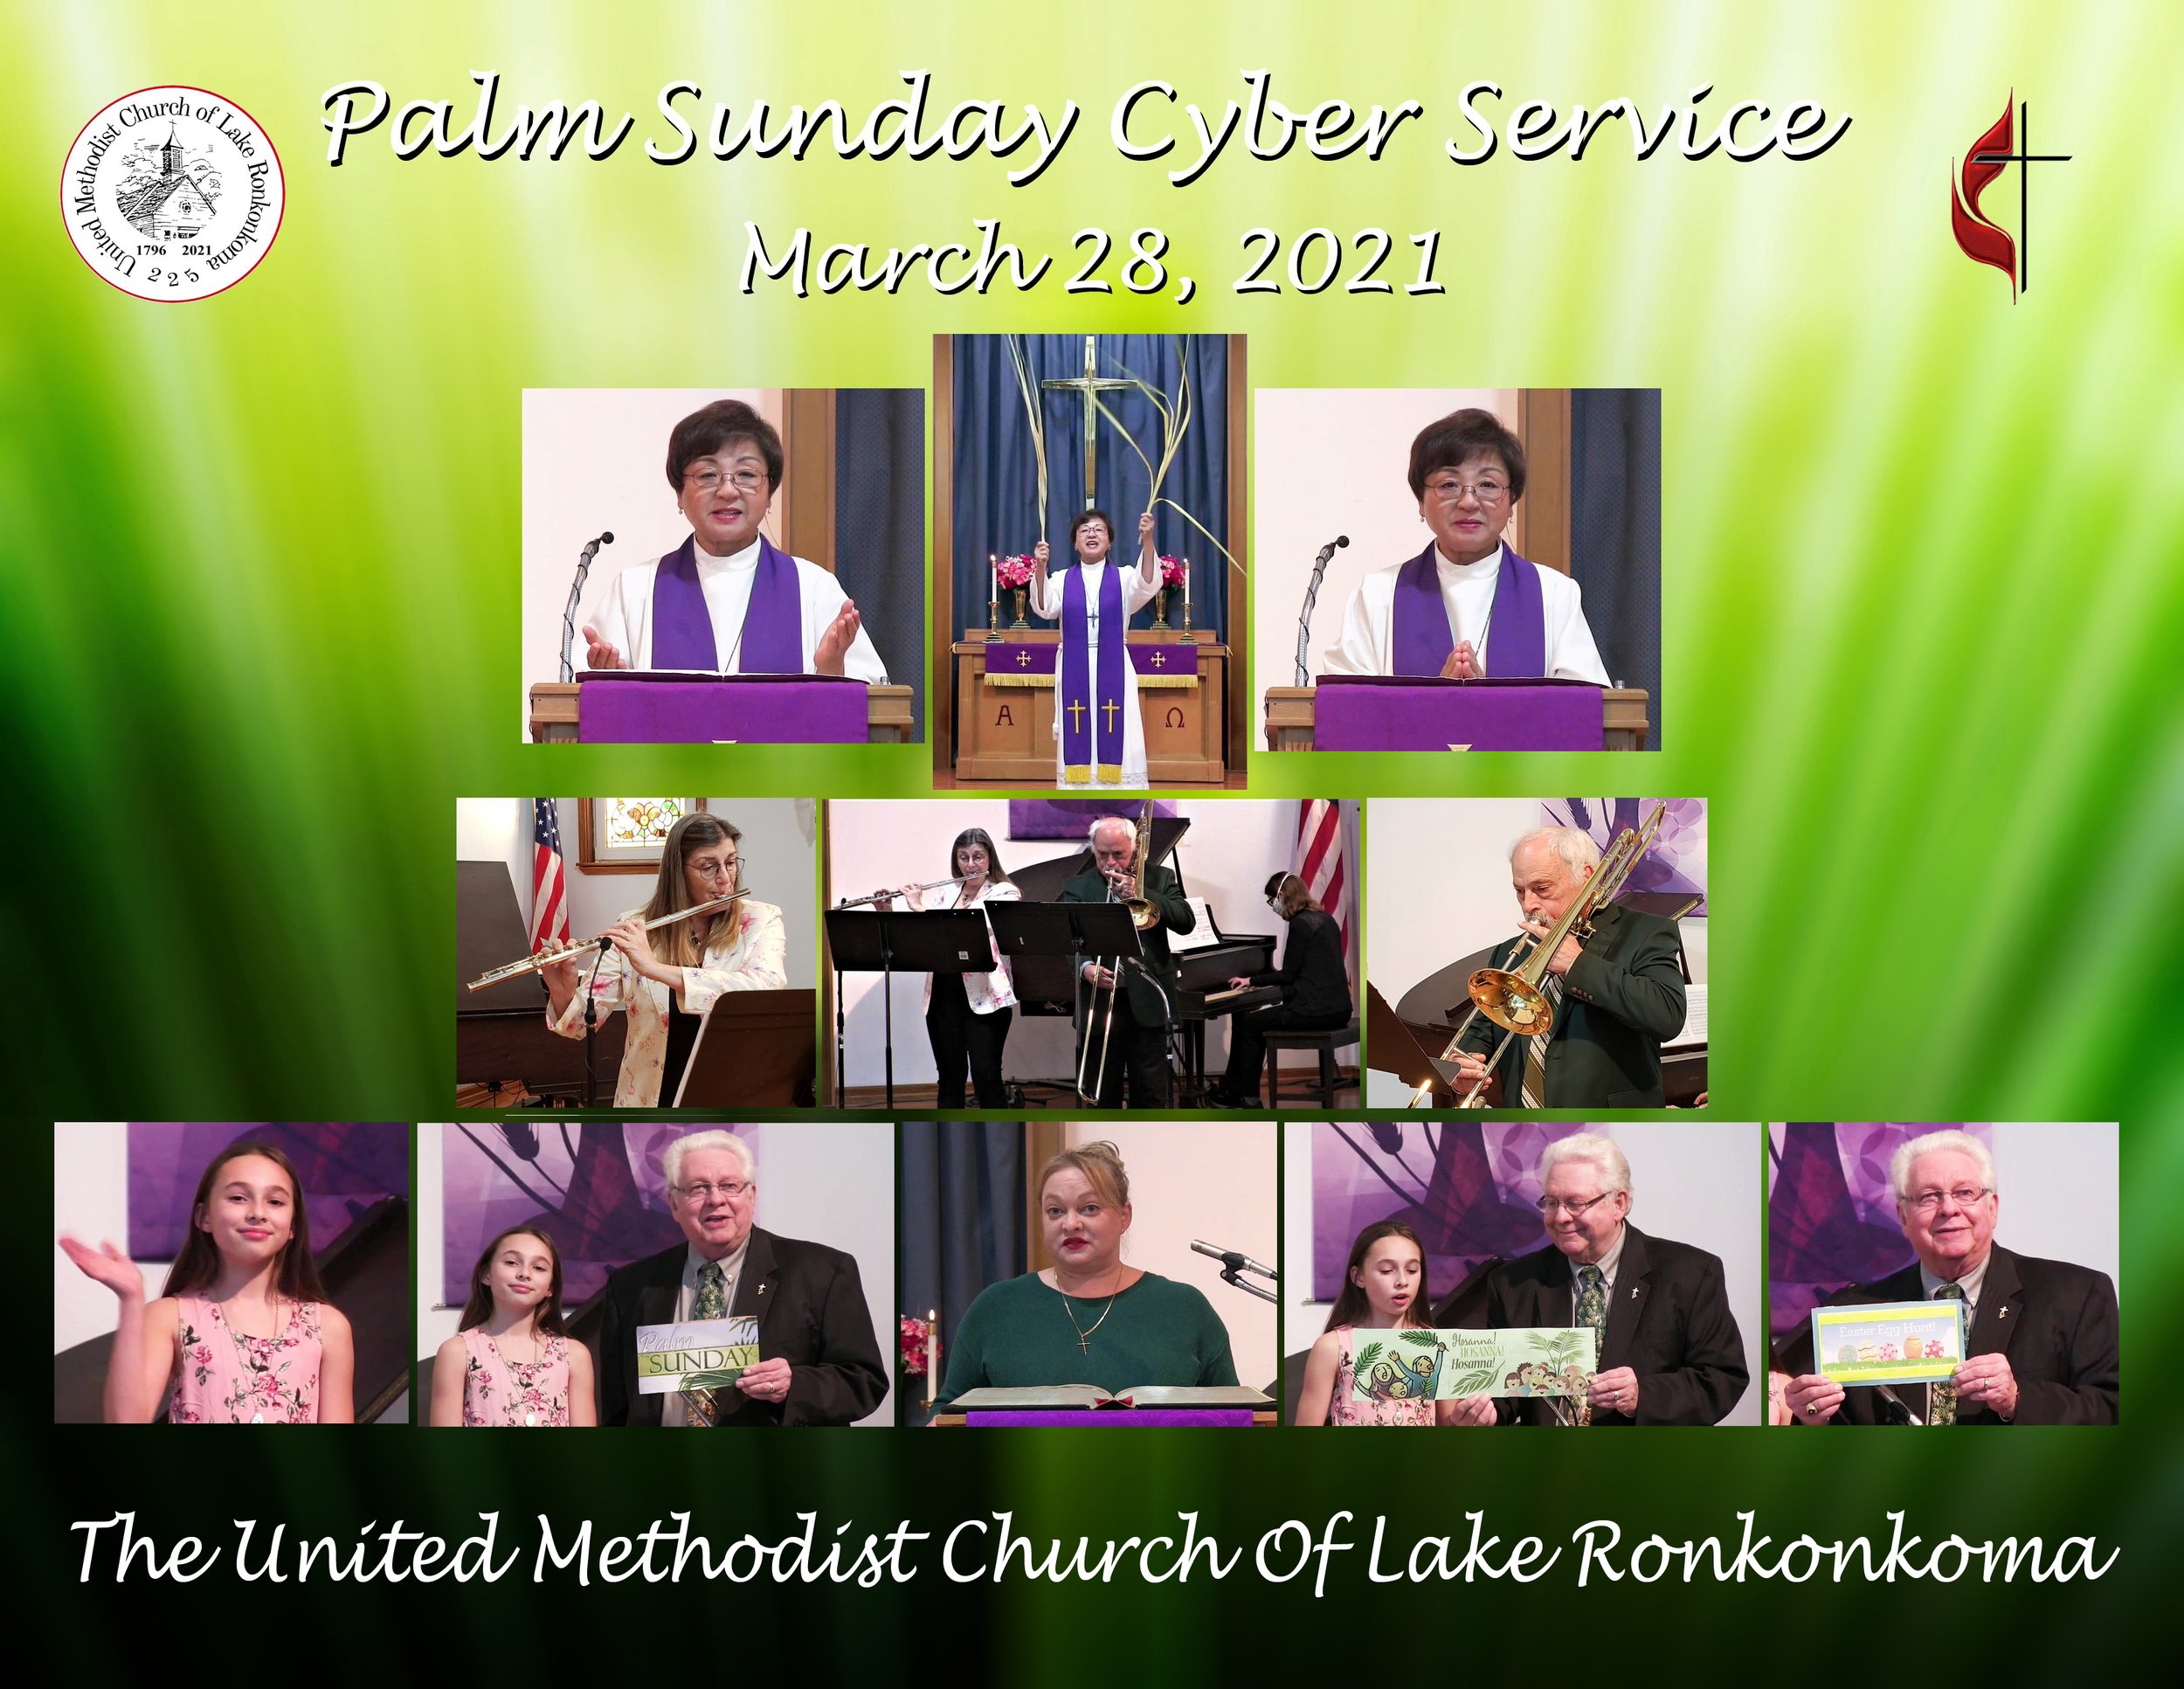 04-03-28-2021 Palm Sunday Cyber Service.jpg